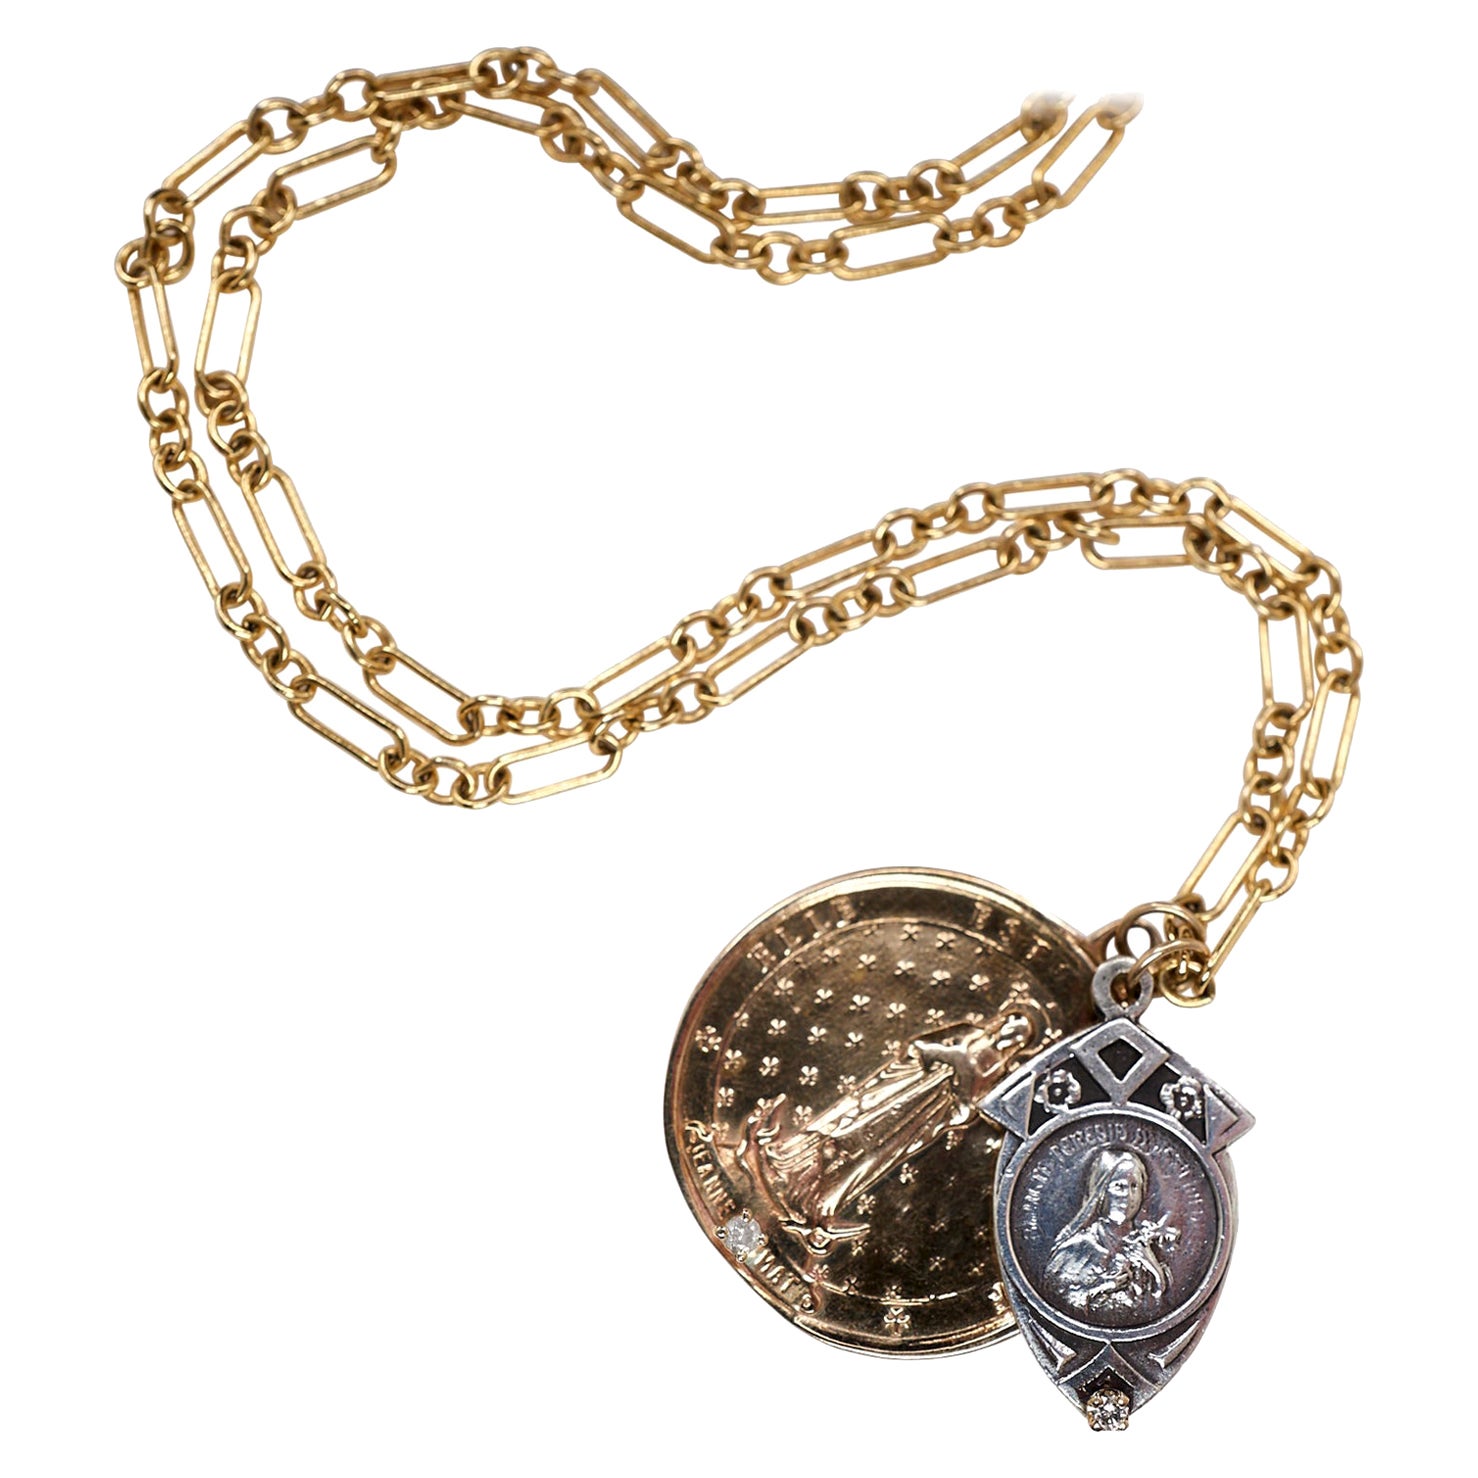 Collier à chaîne épaisse avec pendentif médaillon en diamant blanc Virgin Mary de J Dauphin